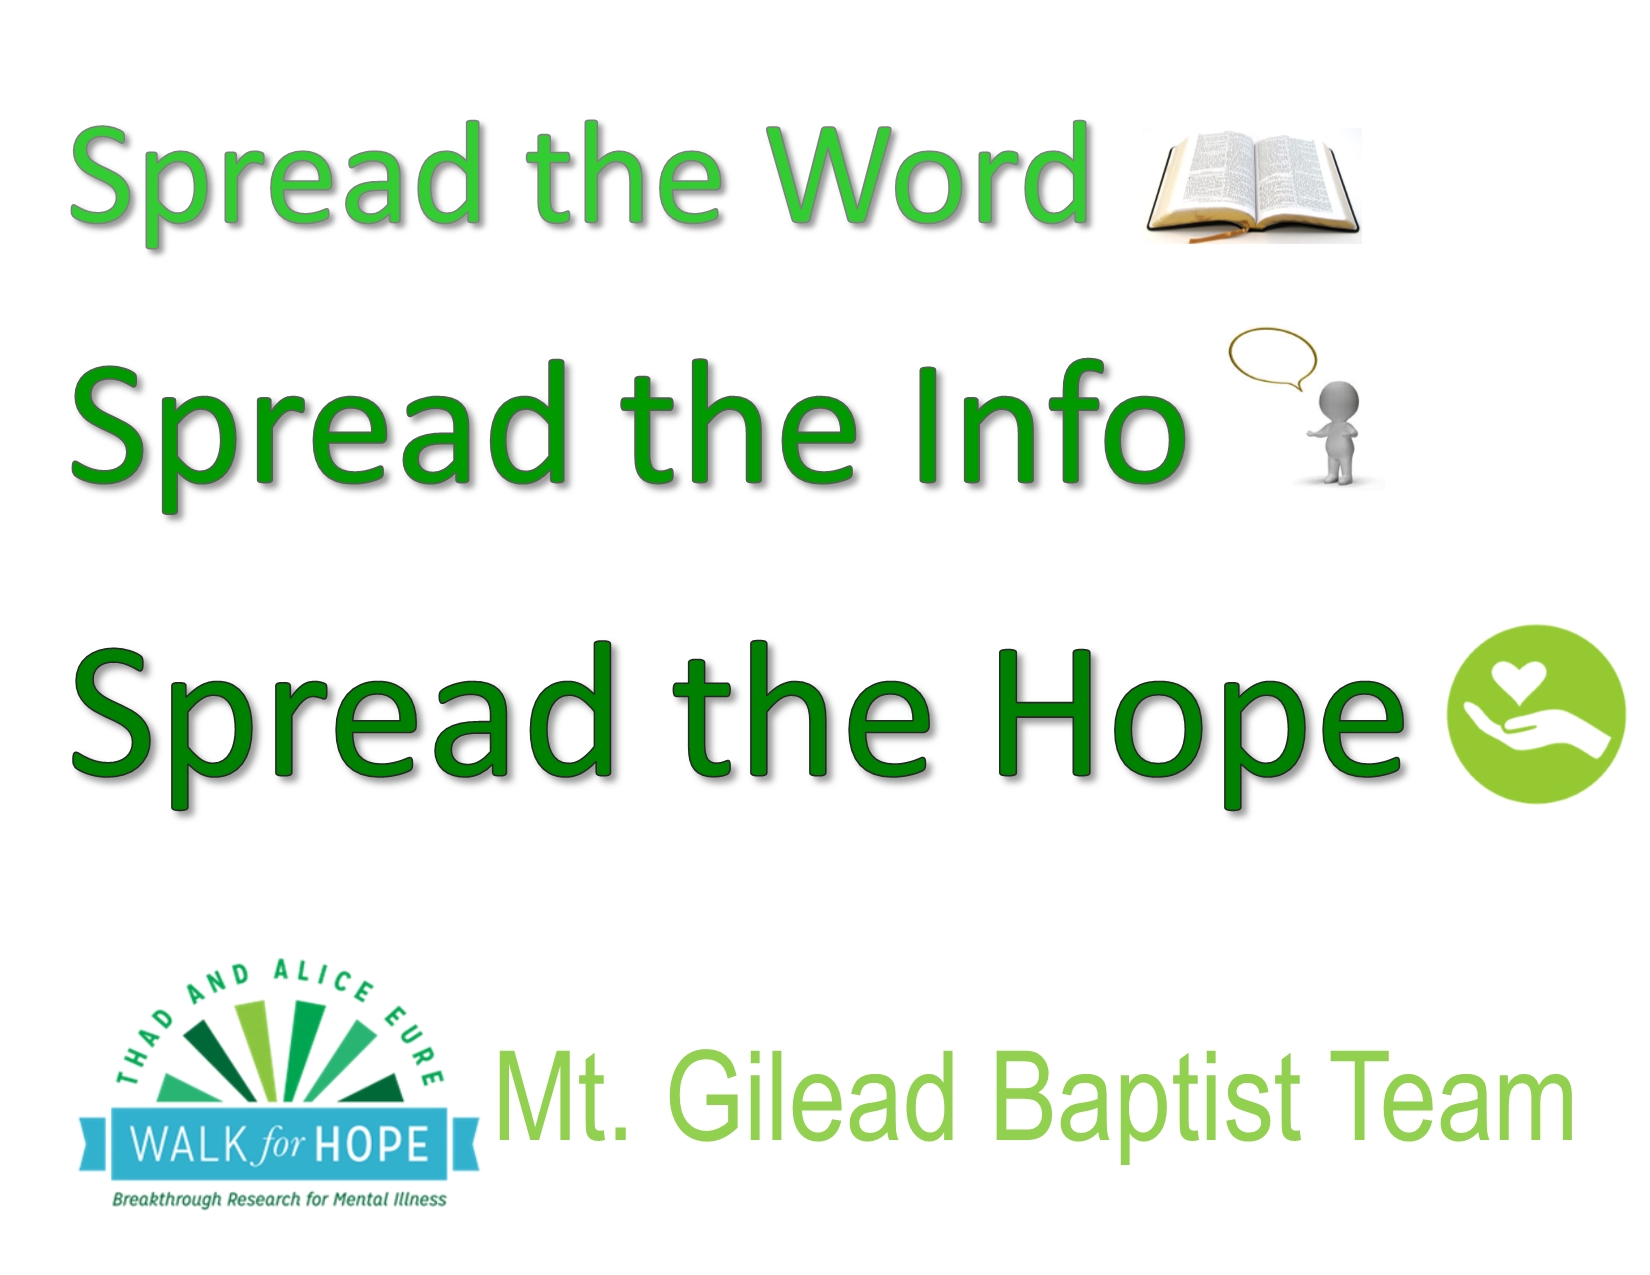 Mt. Gilead Baptist Team